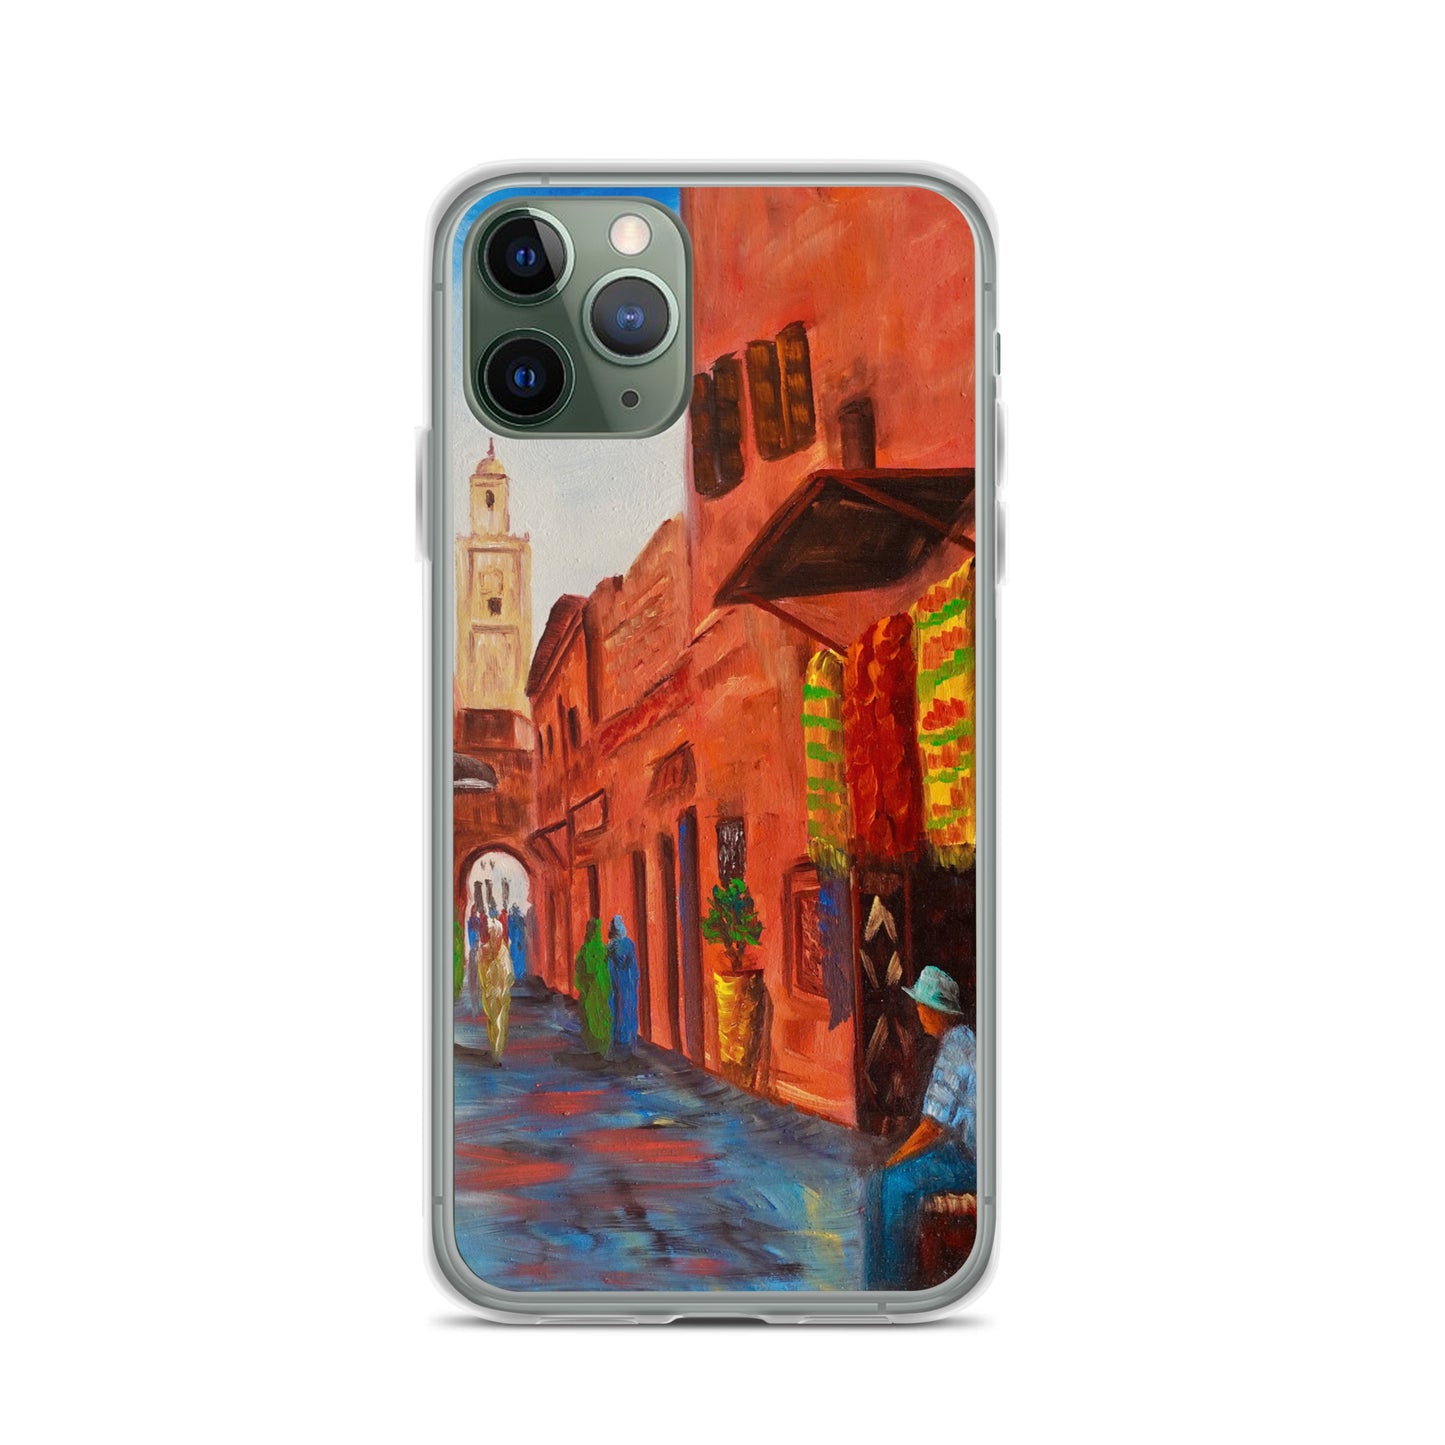 Carcasa para iPhone Marrakech